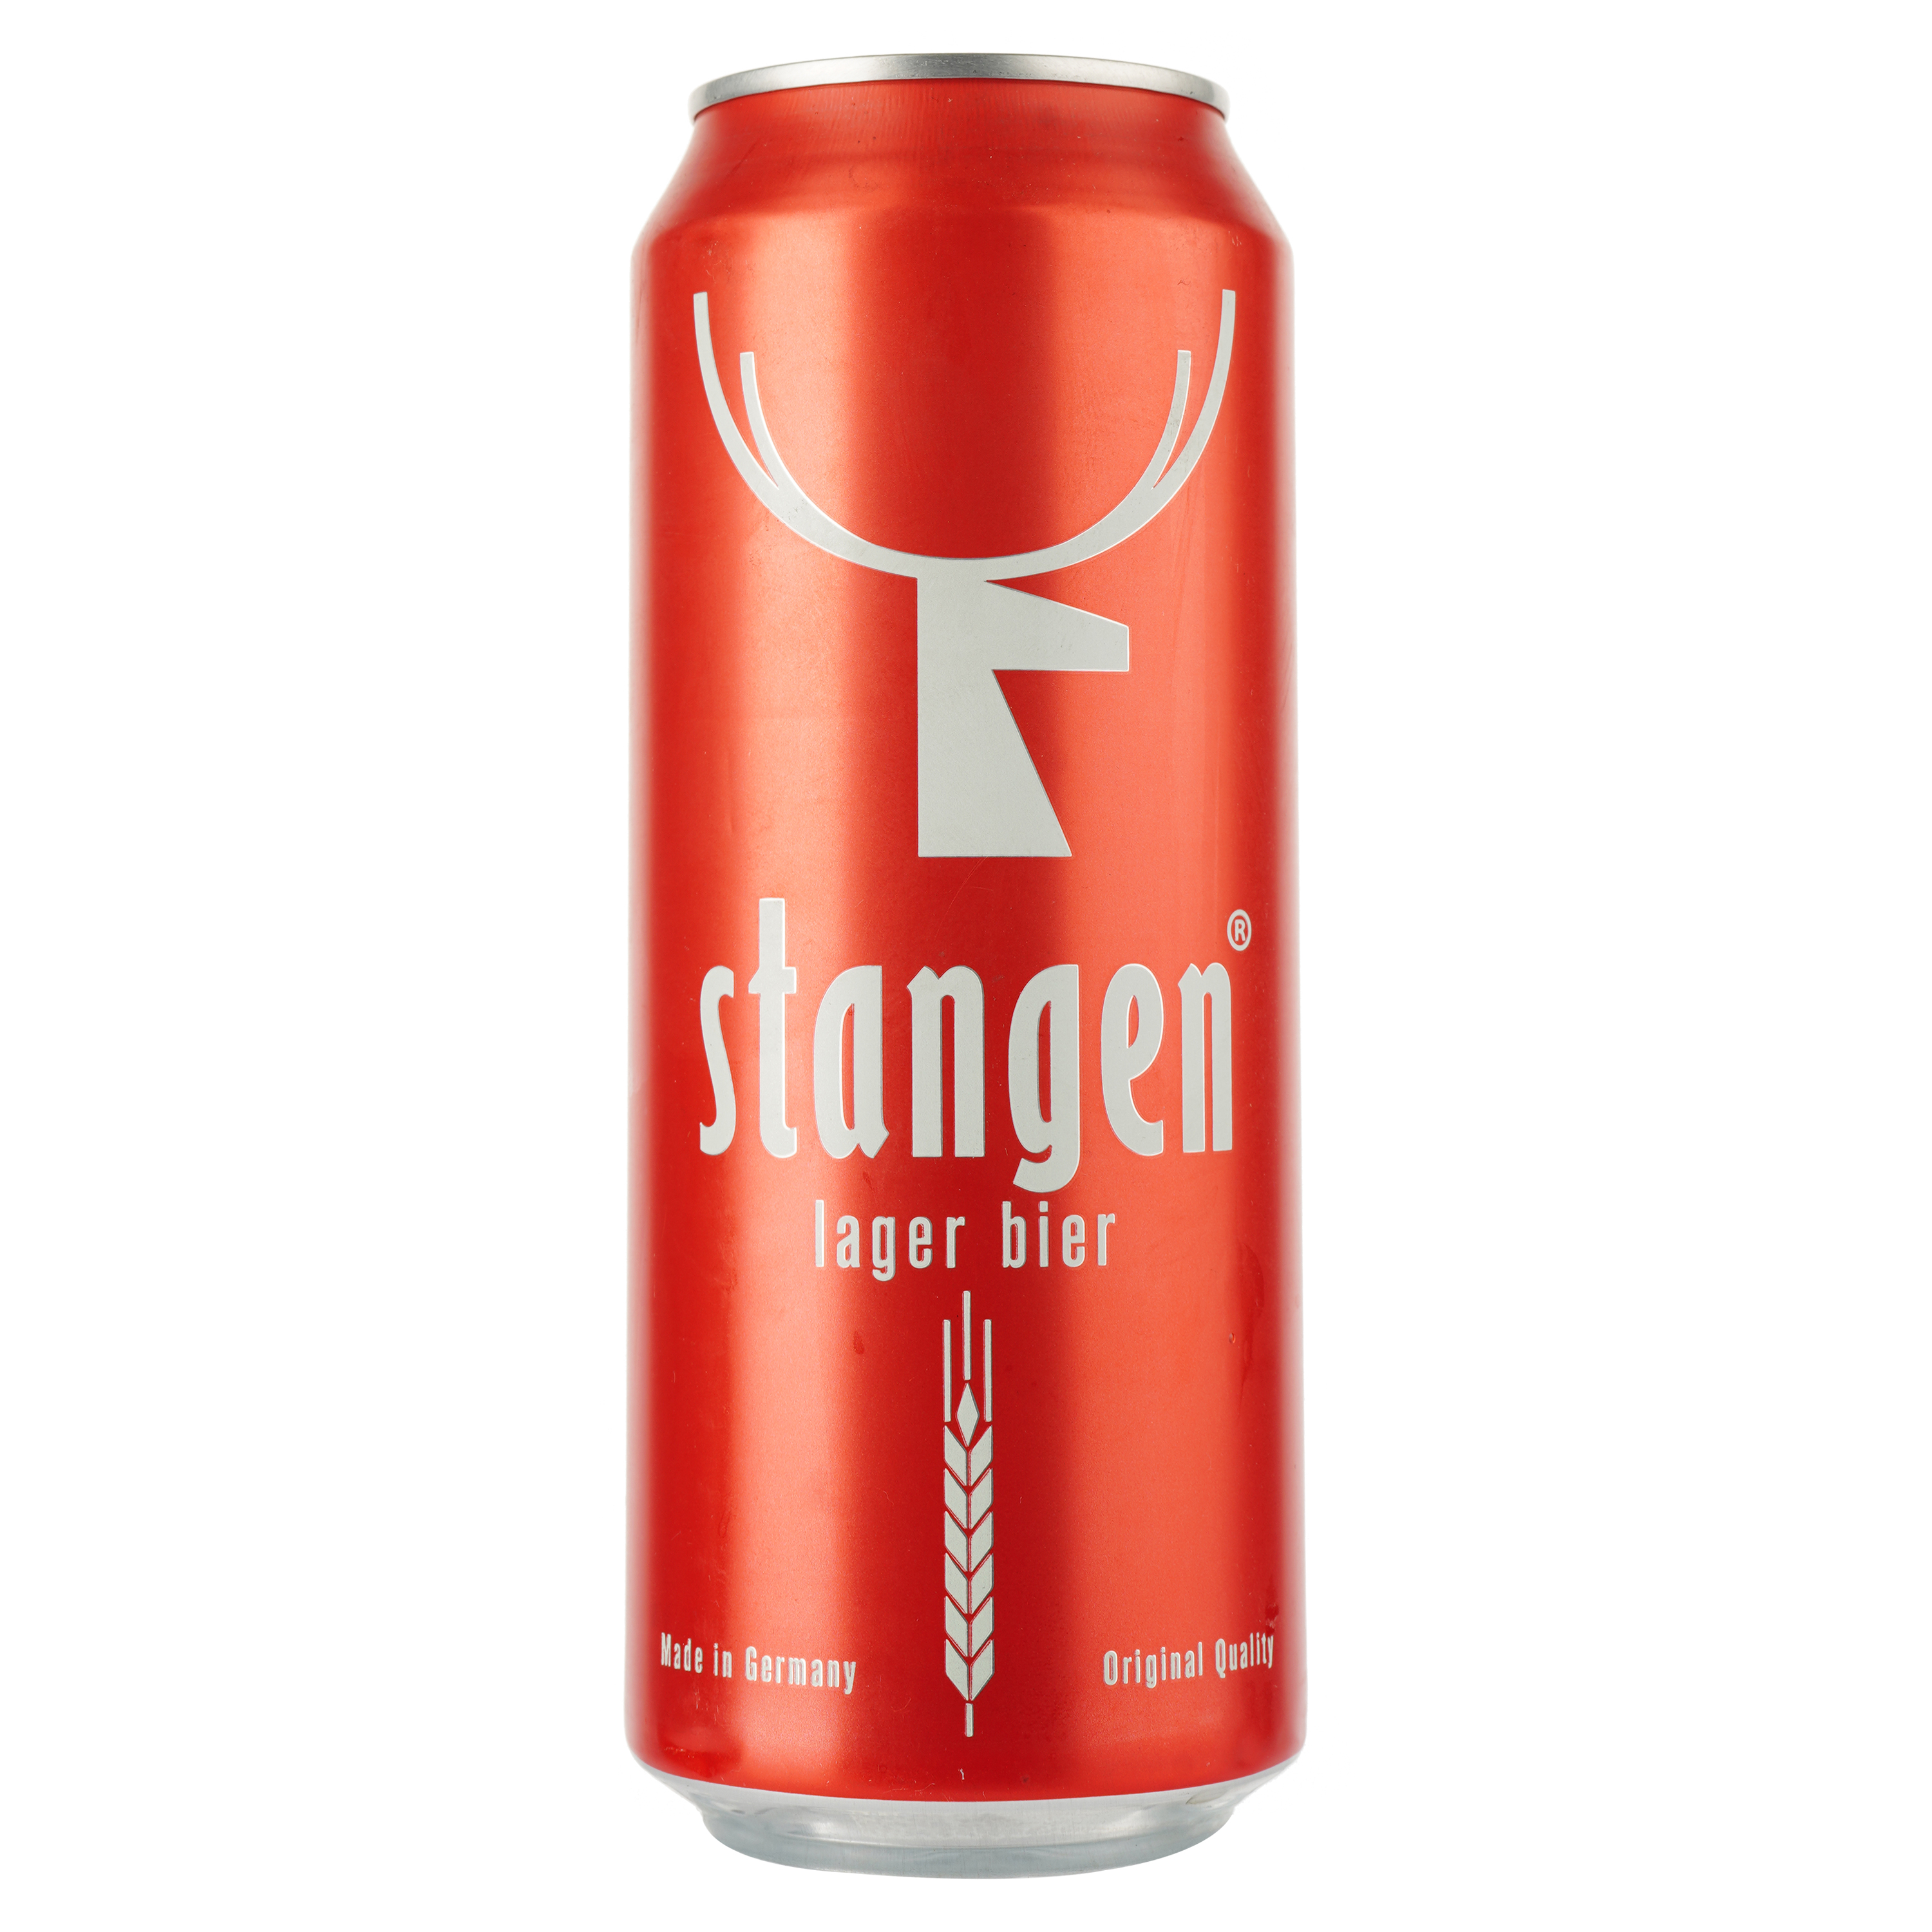 Пиво Stangen Lager bier, світле, фільтроване, 5,4%, з/б, 0,5 л - фото 1